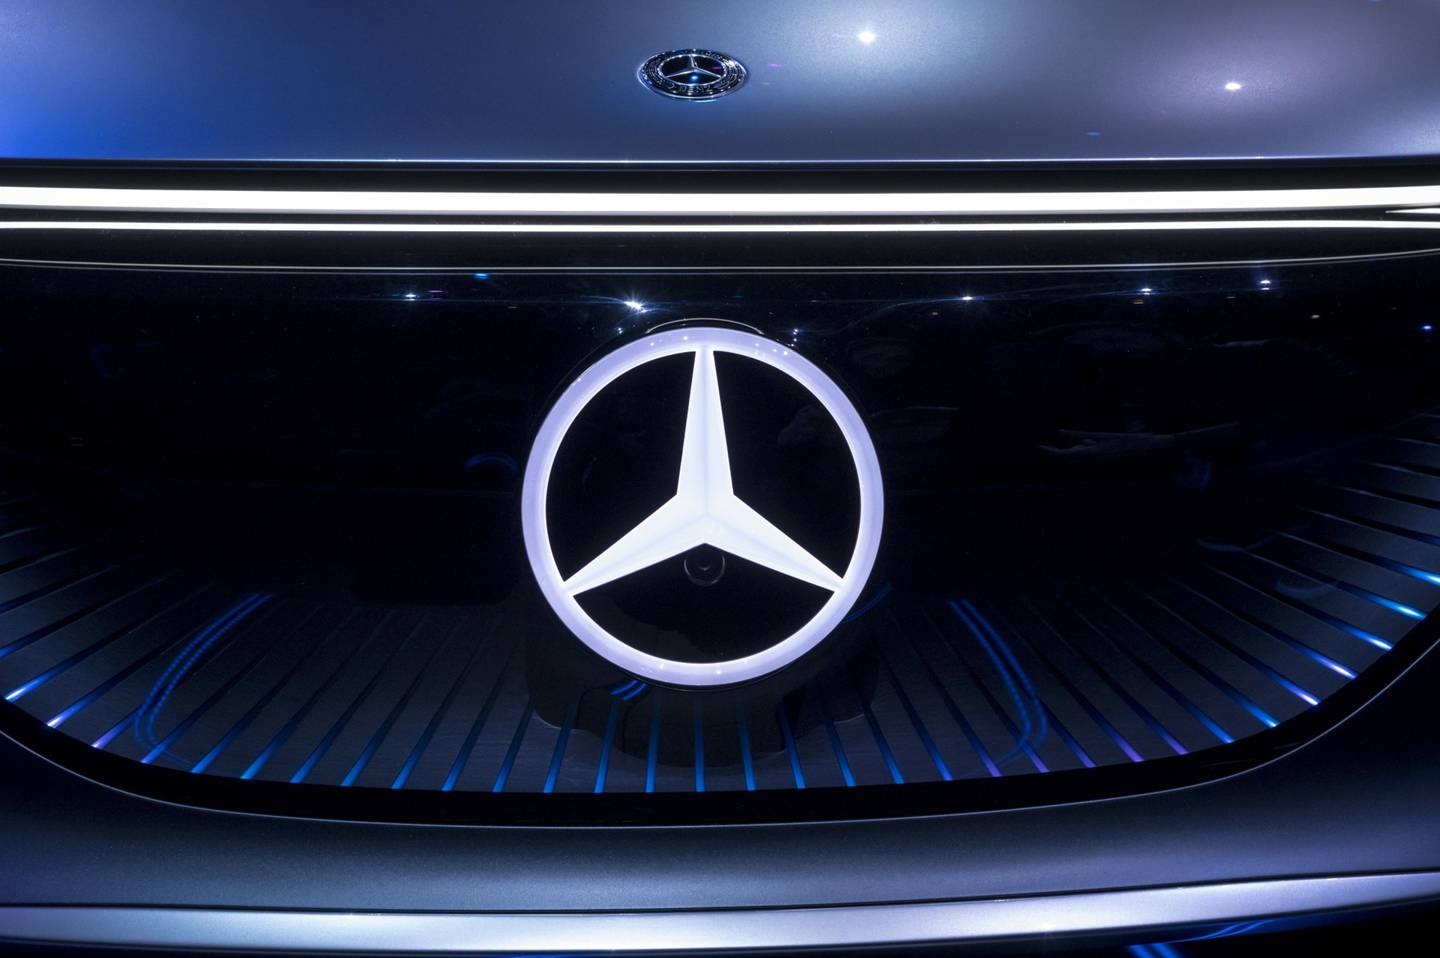 Las operaciones de vans de Mercedes deben prepararse para un mayor escrutinio de los inversionistas después de que Daimler complete una escisión de sus operaciones de camiones pesados.